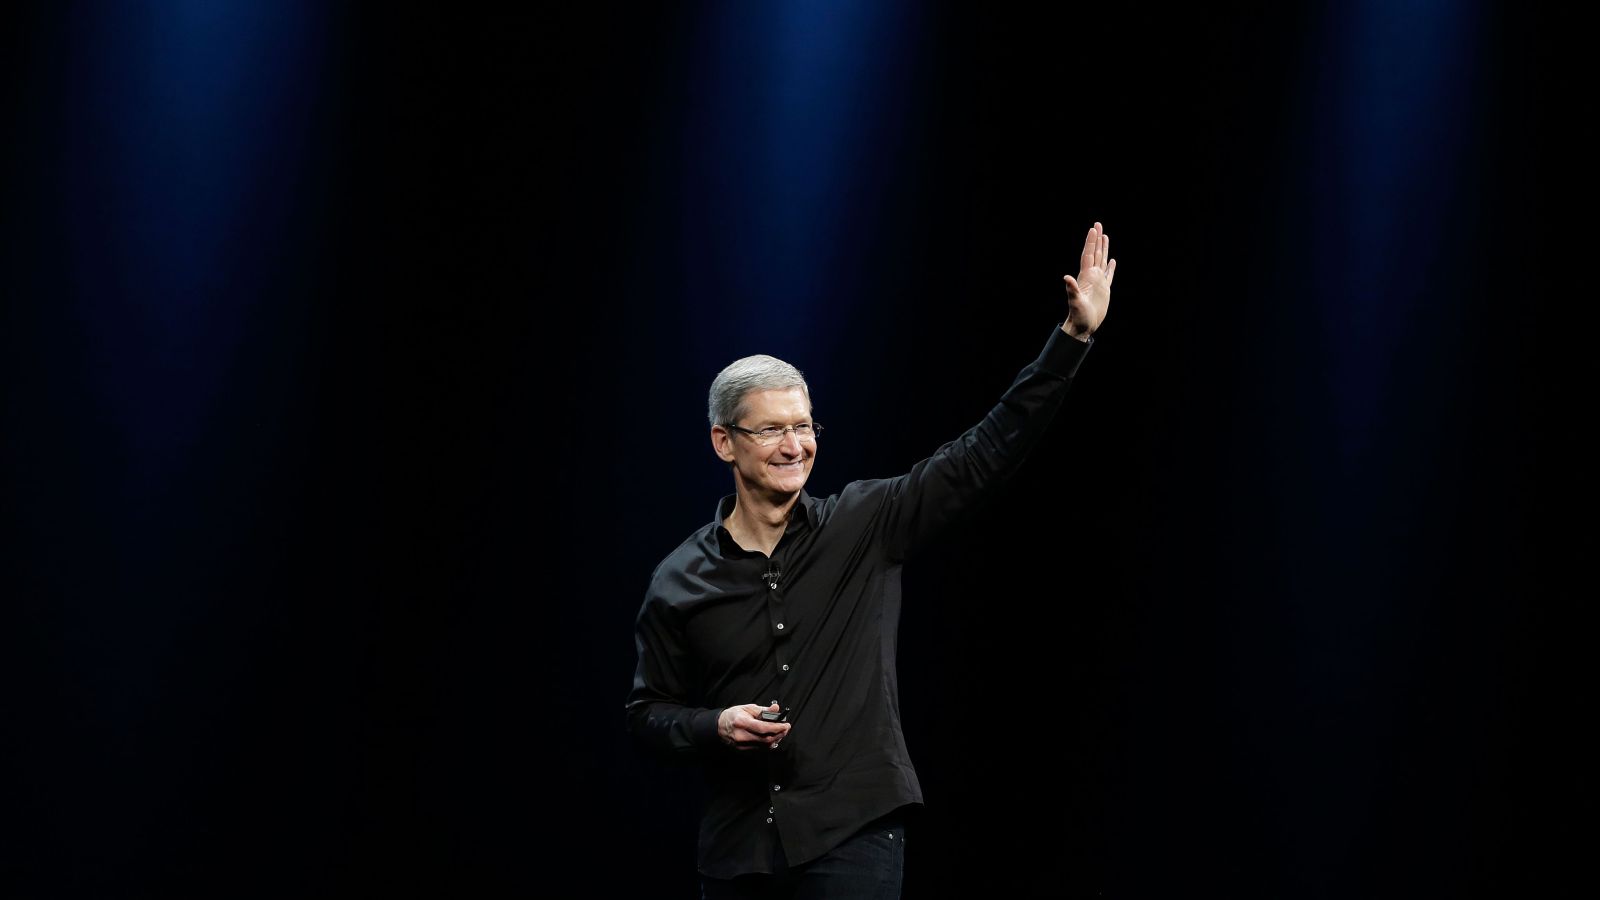 Lần đầu tiên trong lịch sử, Apple sẽ phát trực tiếp sự kiện ra mắt iPhone mới trên mạng xã hội